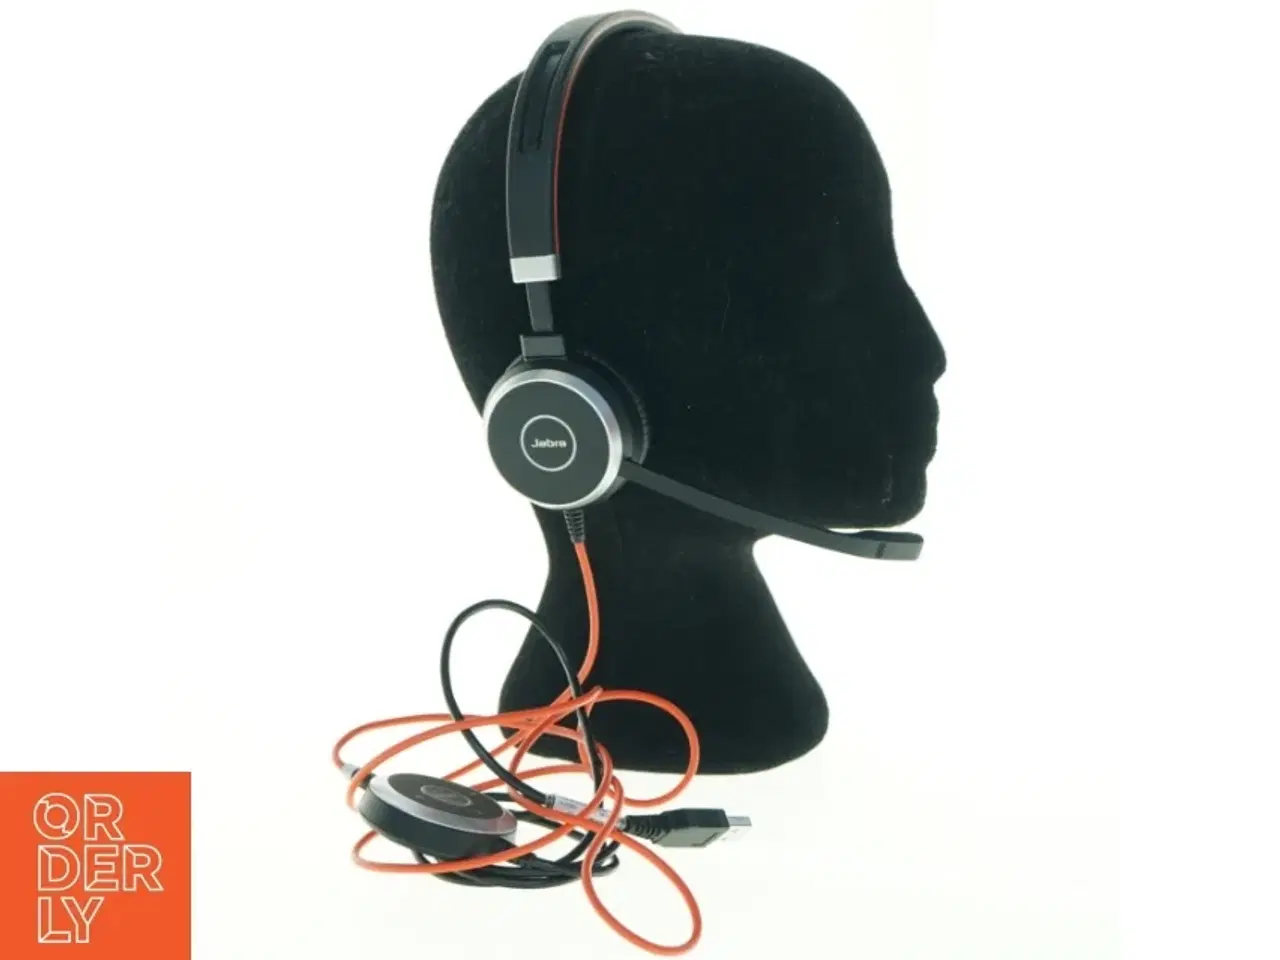 Billede 2 - Jabra headset med mikrofon fra Jabra (str. 17 x, 18 cm)